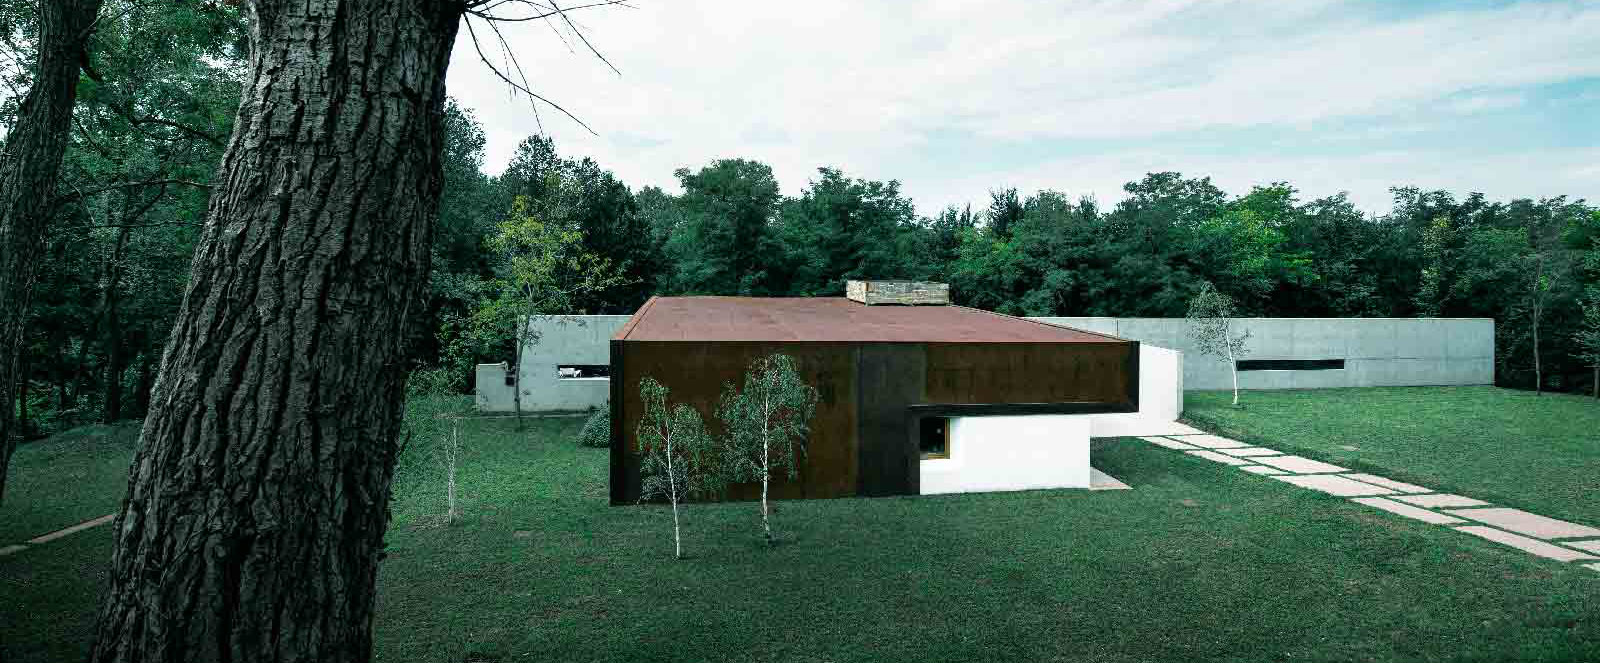 MUSE Design Winners - riverside cabin